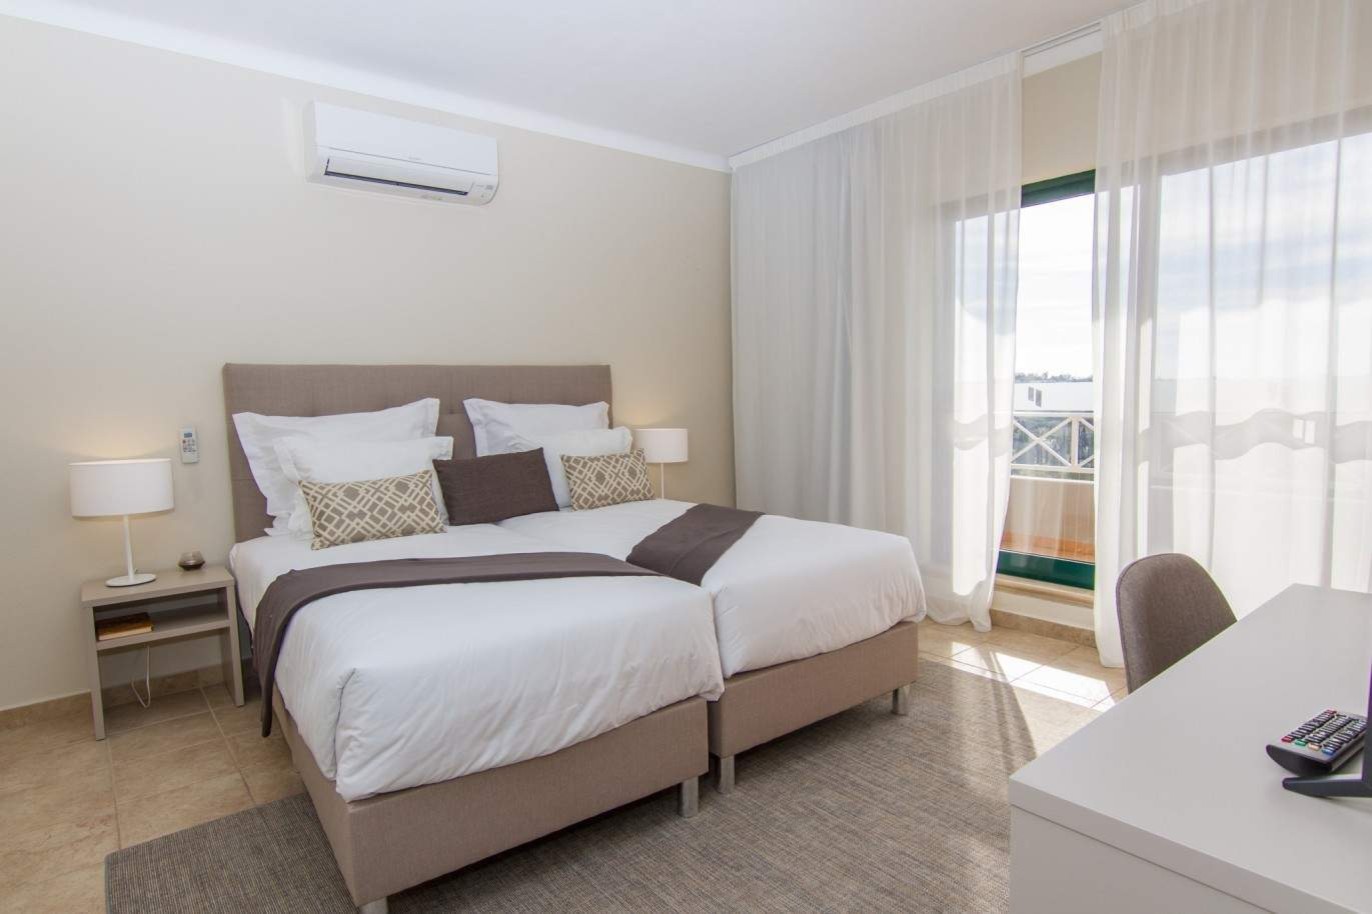 Venta de apartamento nuevo en el Carvoeiro, Algarve, Portugal_214767